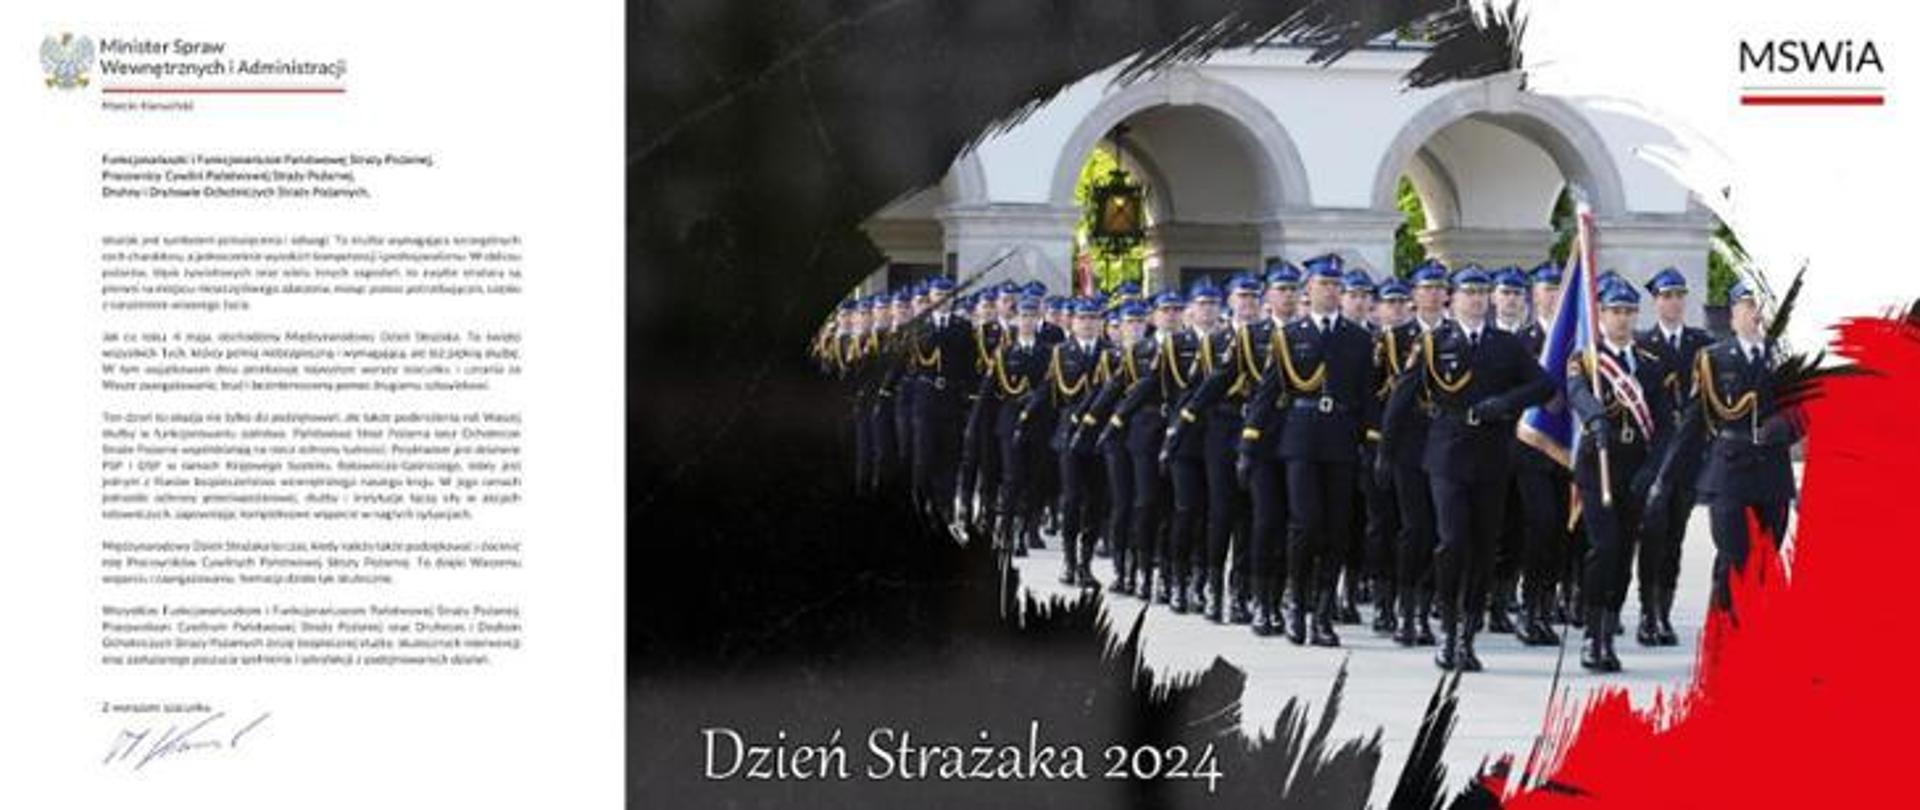 Po lewej stronie zdjęcia treść życzeń składanych przez Marcina Kierwińskiego Ministra Spraw Wewnętrznych i Administracji. Po prawej stronie zdjęcie maszerującego pocztu sztandarowego i kompanii reprezentacyjnej funkcjonariuszy Państwowej Straży Pożarnej.